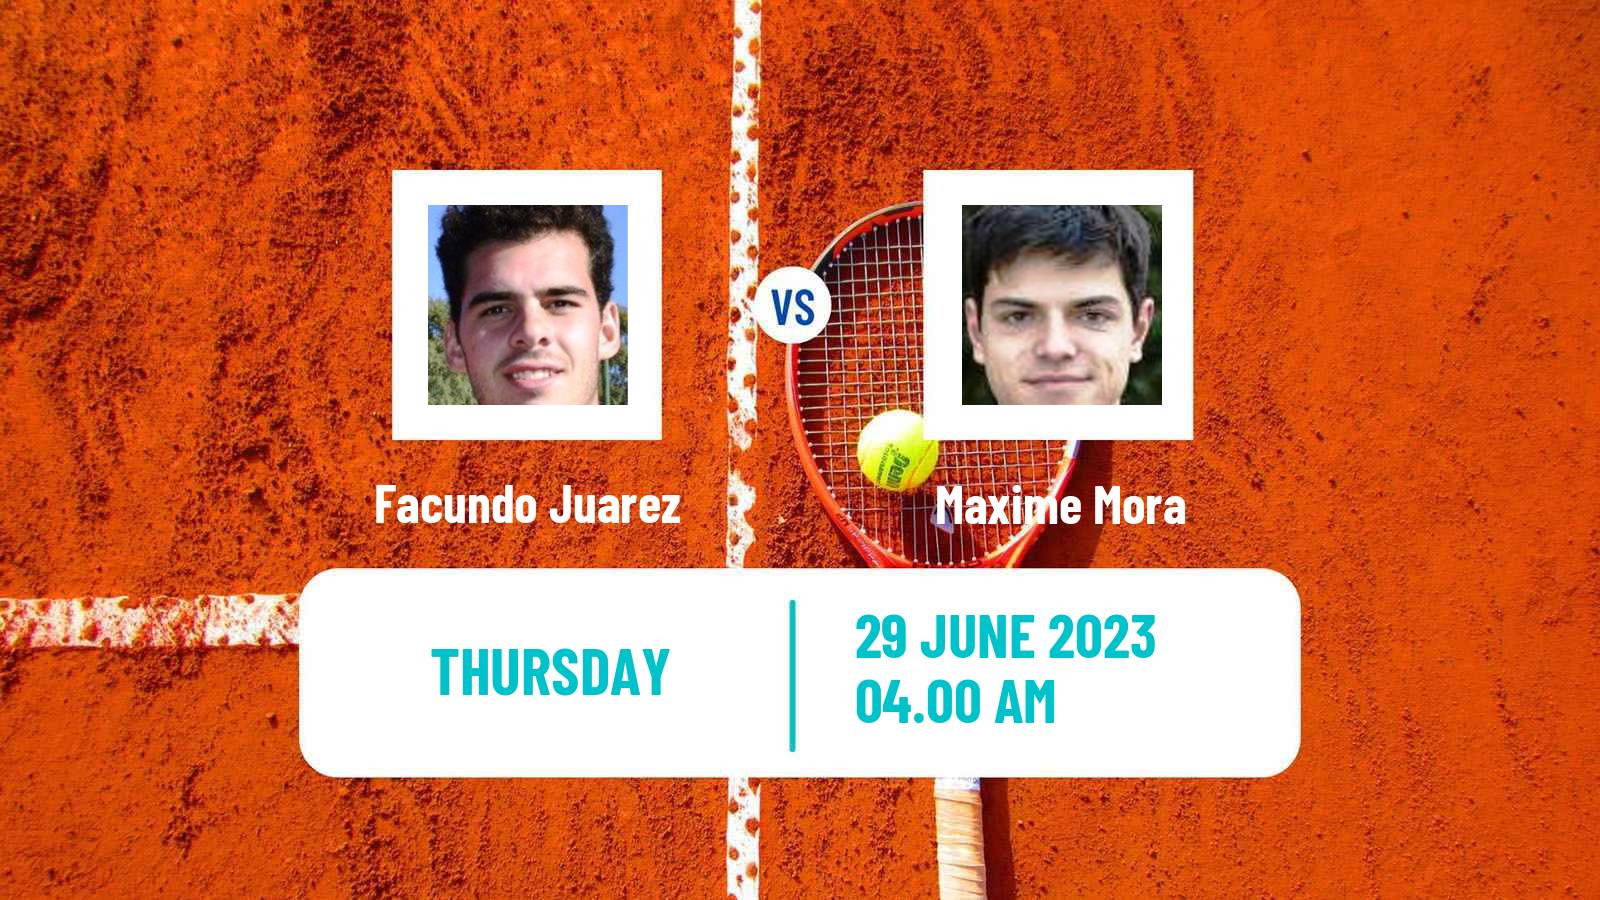 Tennis ITF M25 Arlon Men Facundo Juarez - Maxime Mora